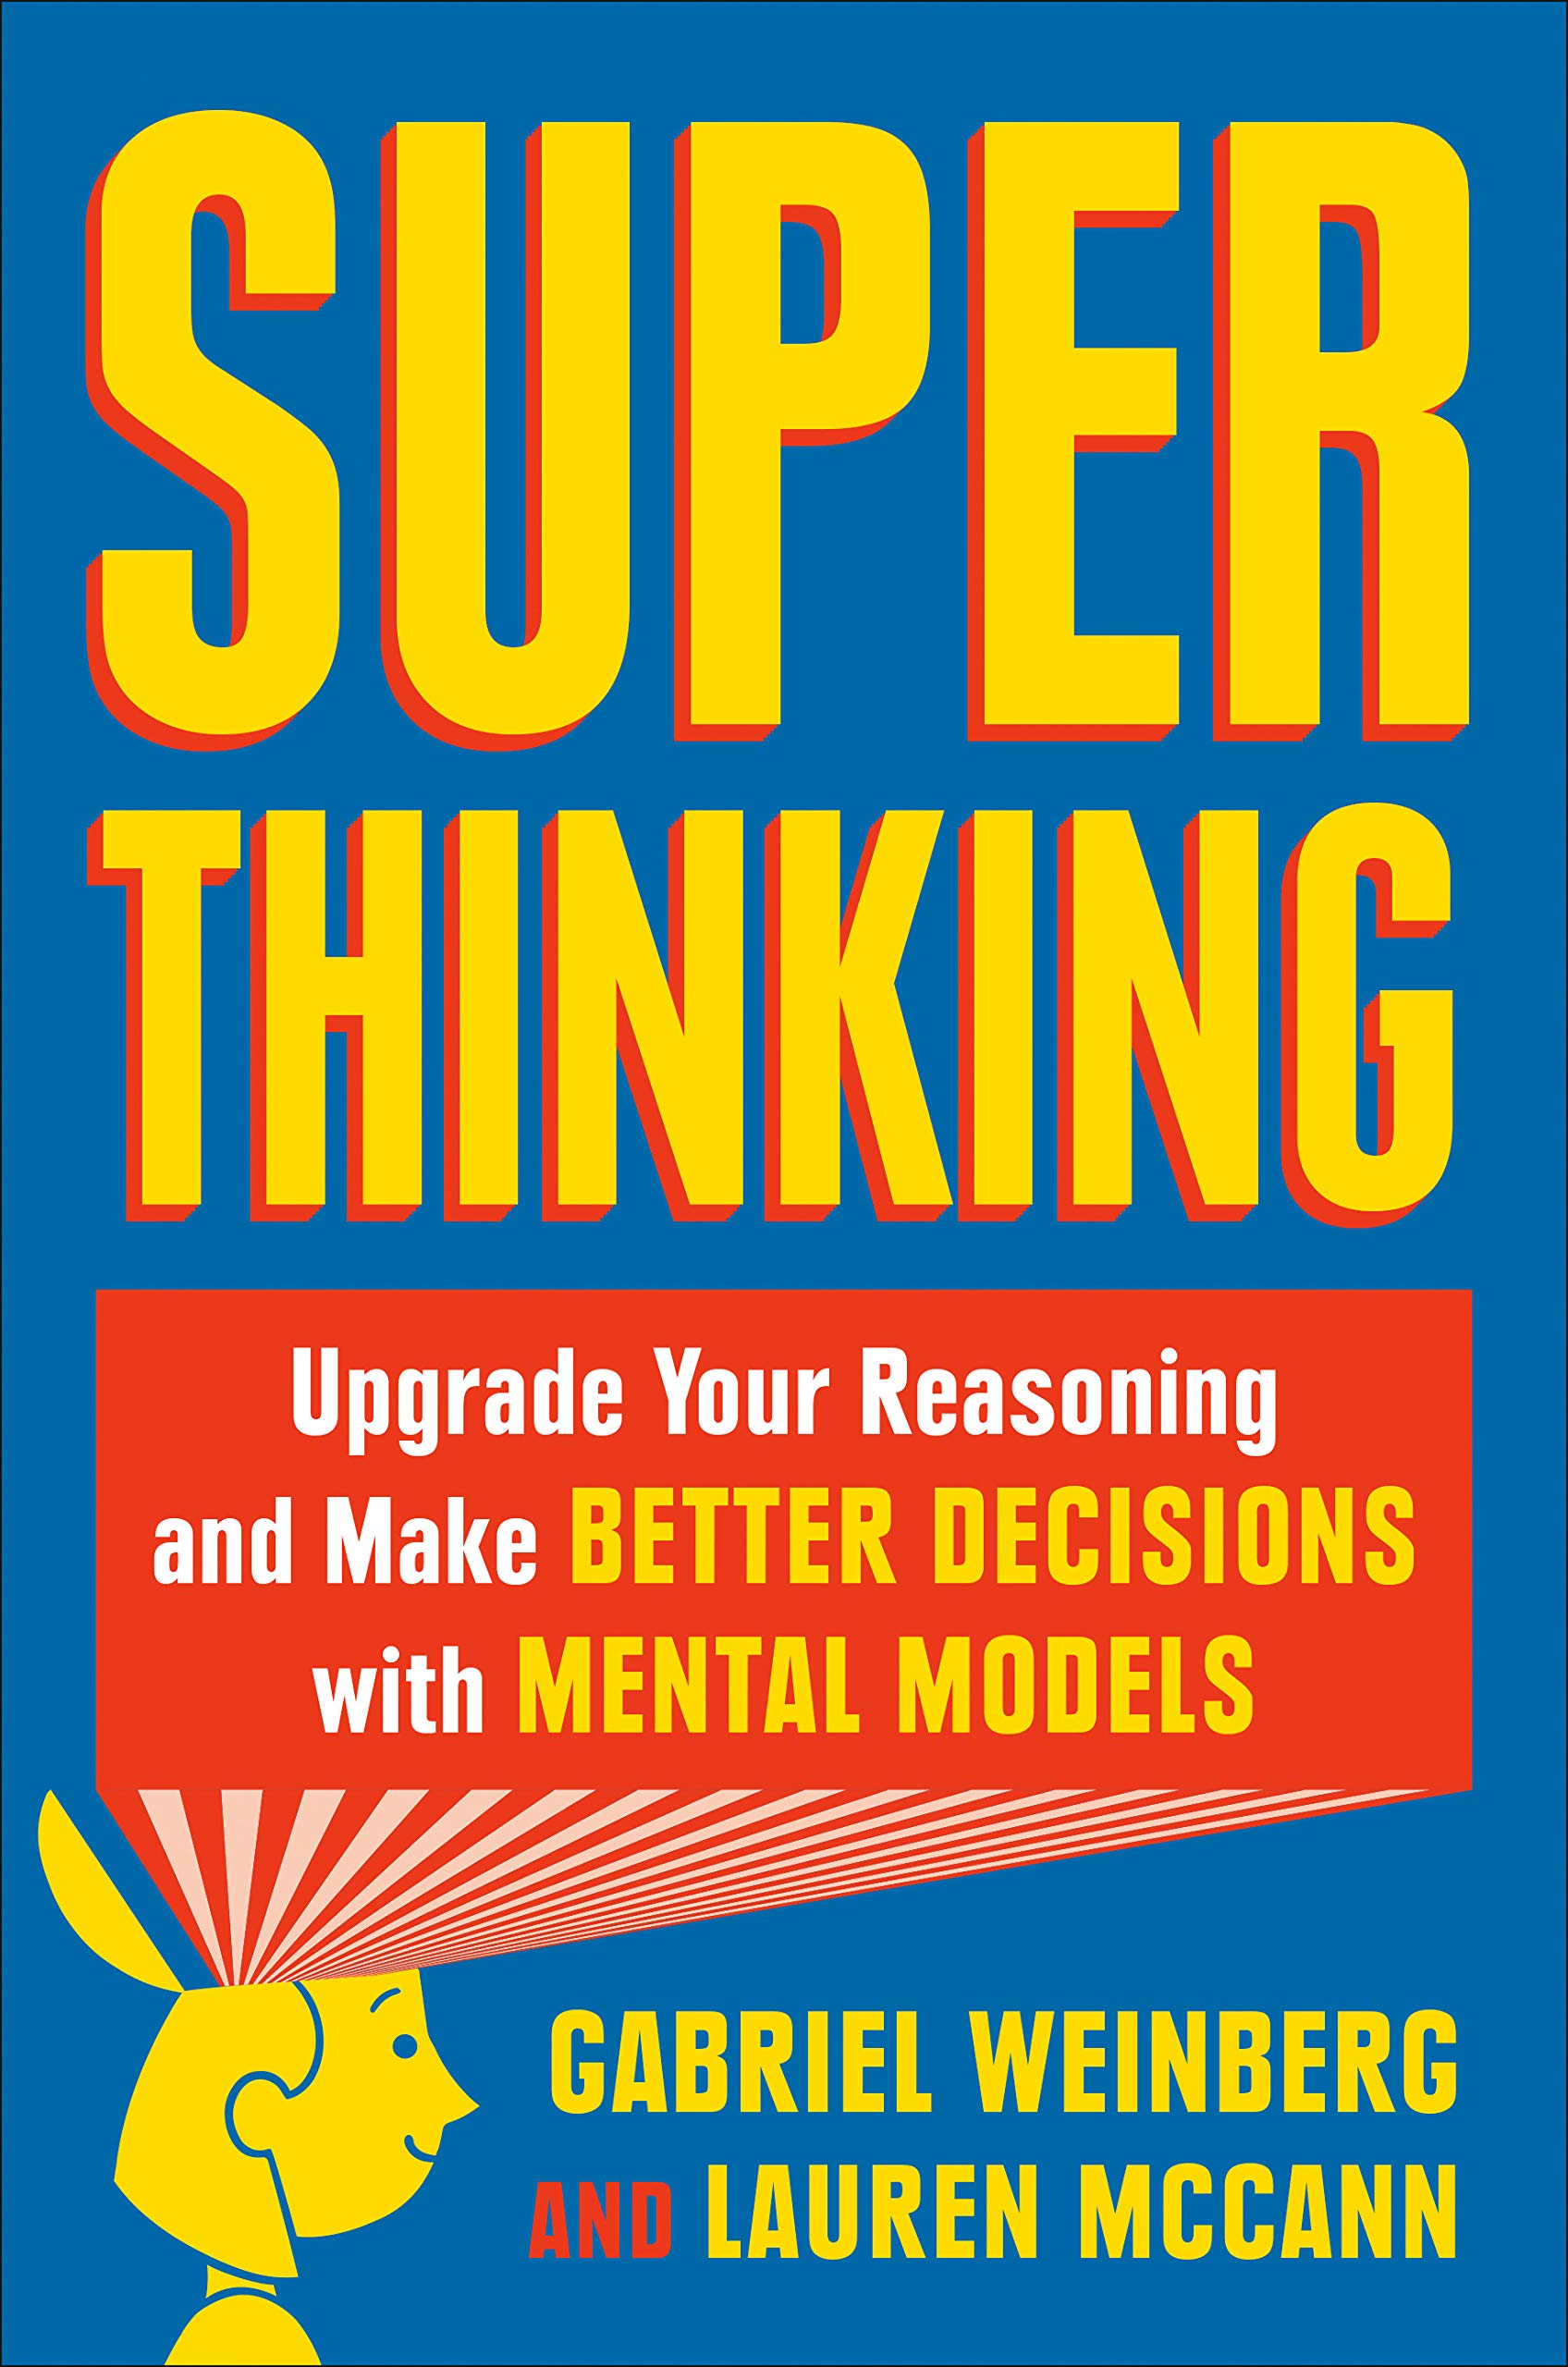 Super Thinking | Gabriel Weinberg, Lauren McCann